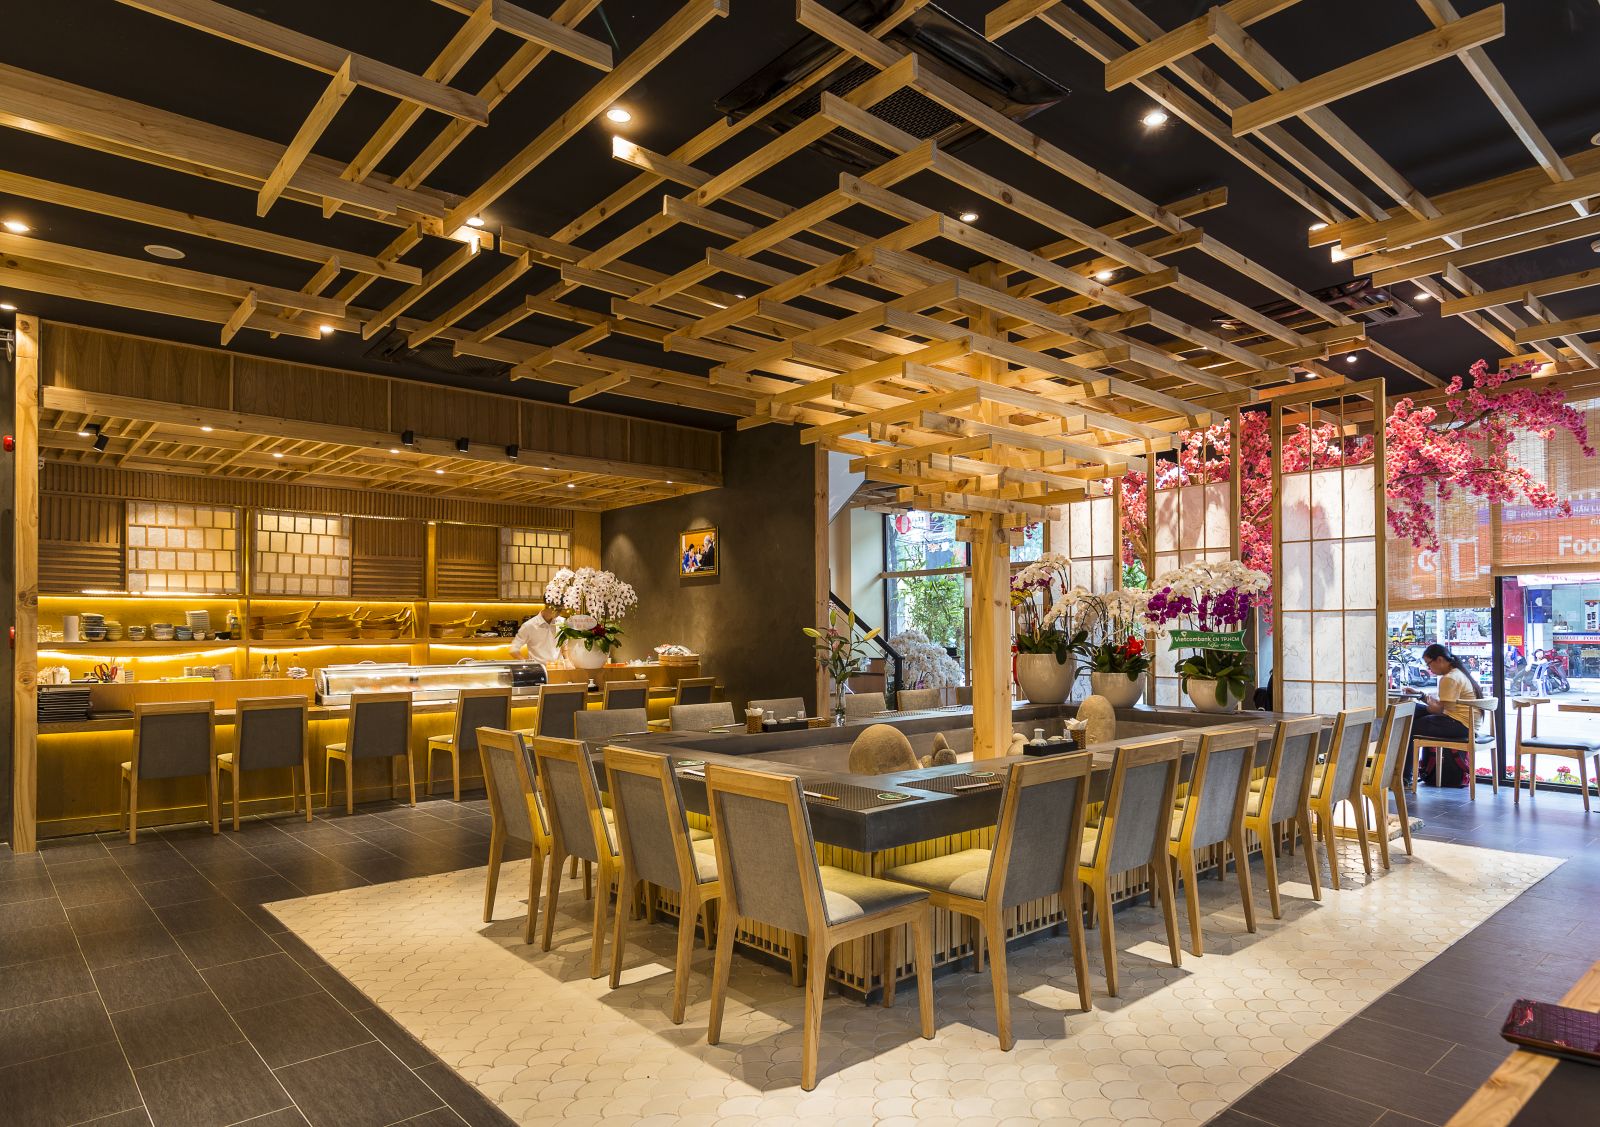 Tối ưu diện tích không gian giúp tăng tính thẩm mỹ cho cả nhà hàng